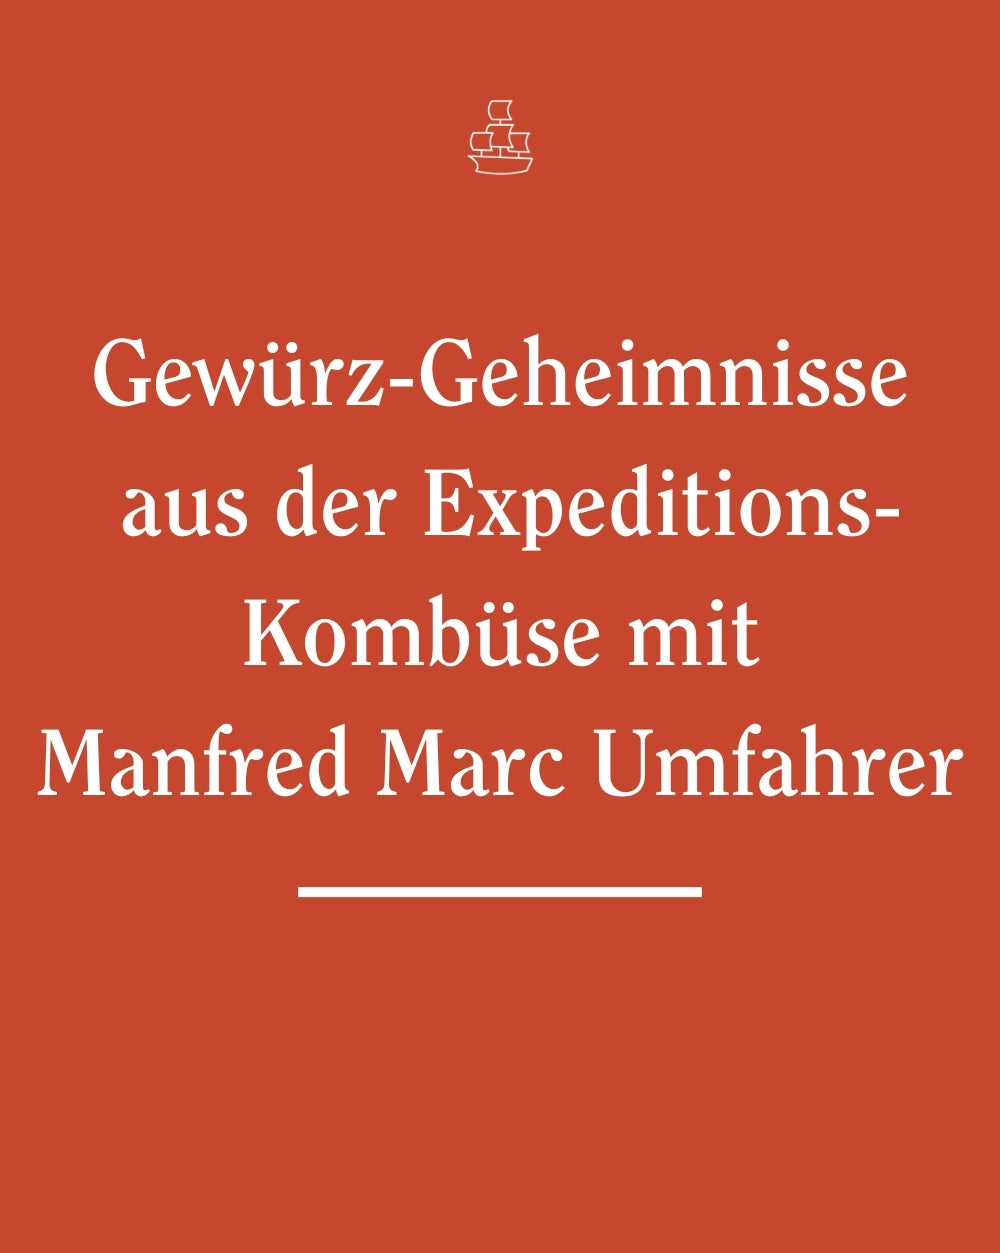 Gewürz-Geheimnisse aus der Expeditions-Kombüse mit Manfred Marc Umfahrer